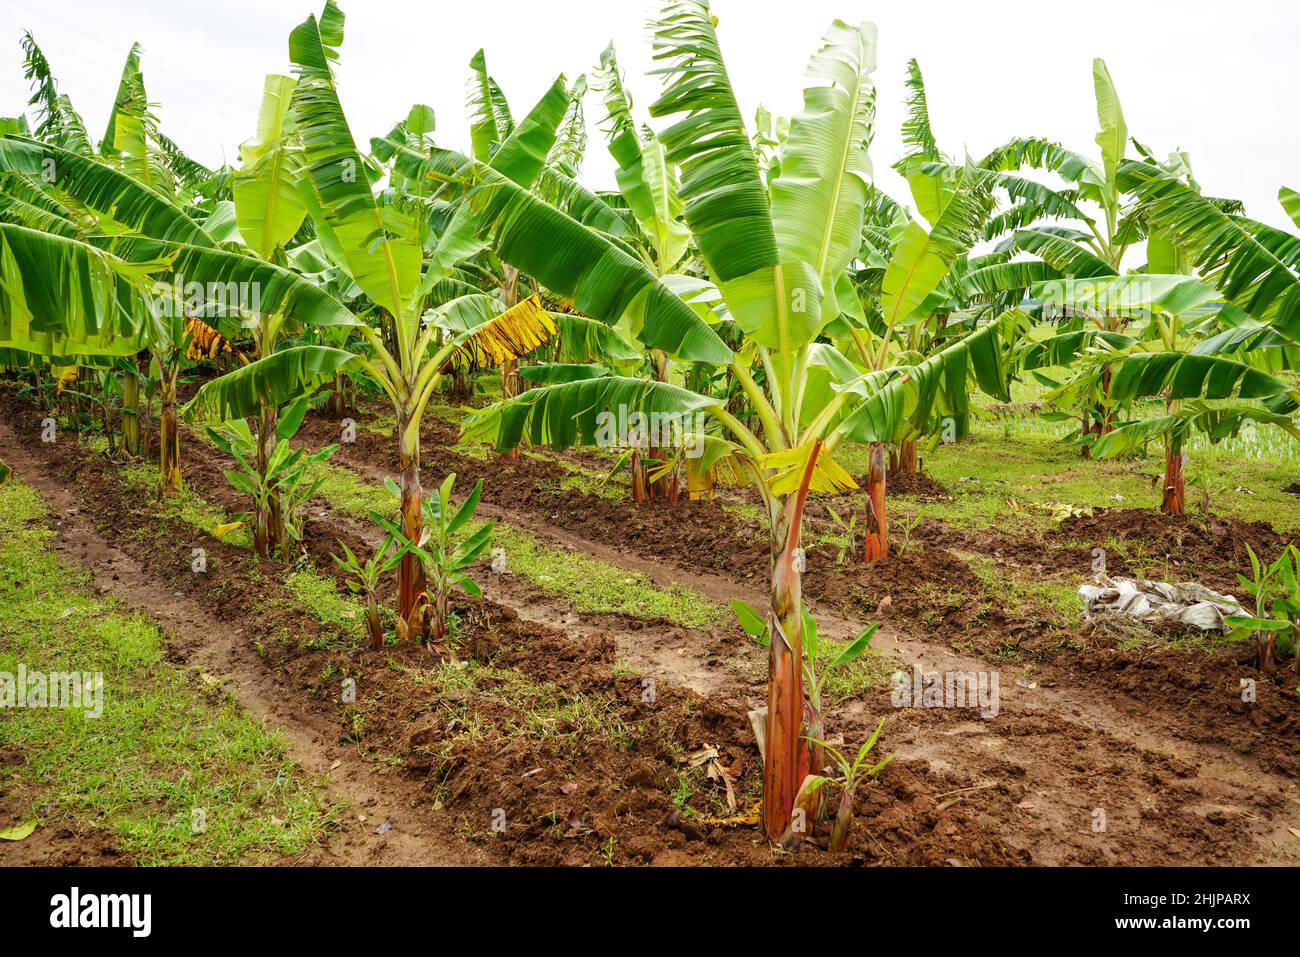 Coltivare banane e germogli di banana in un giardino. Foto Stock